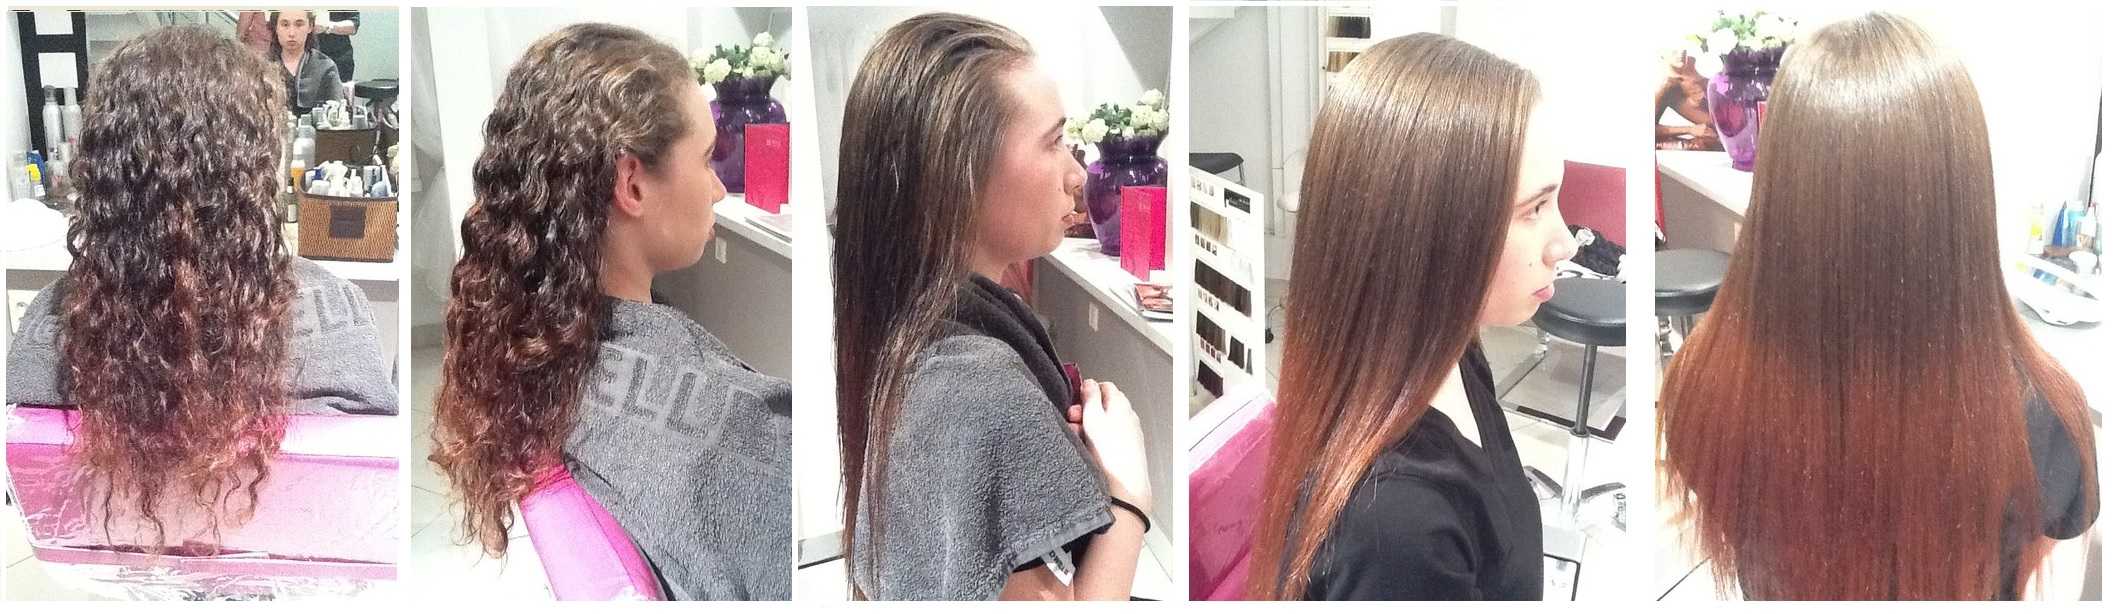 Японское выпрямление волос, отличия от кератинового, фото до и после, отзывы